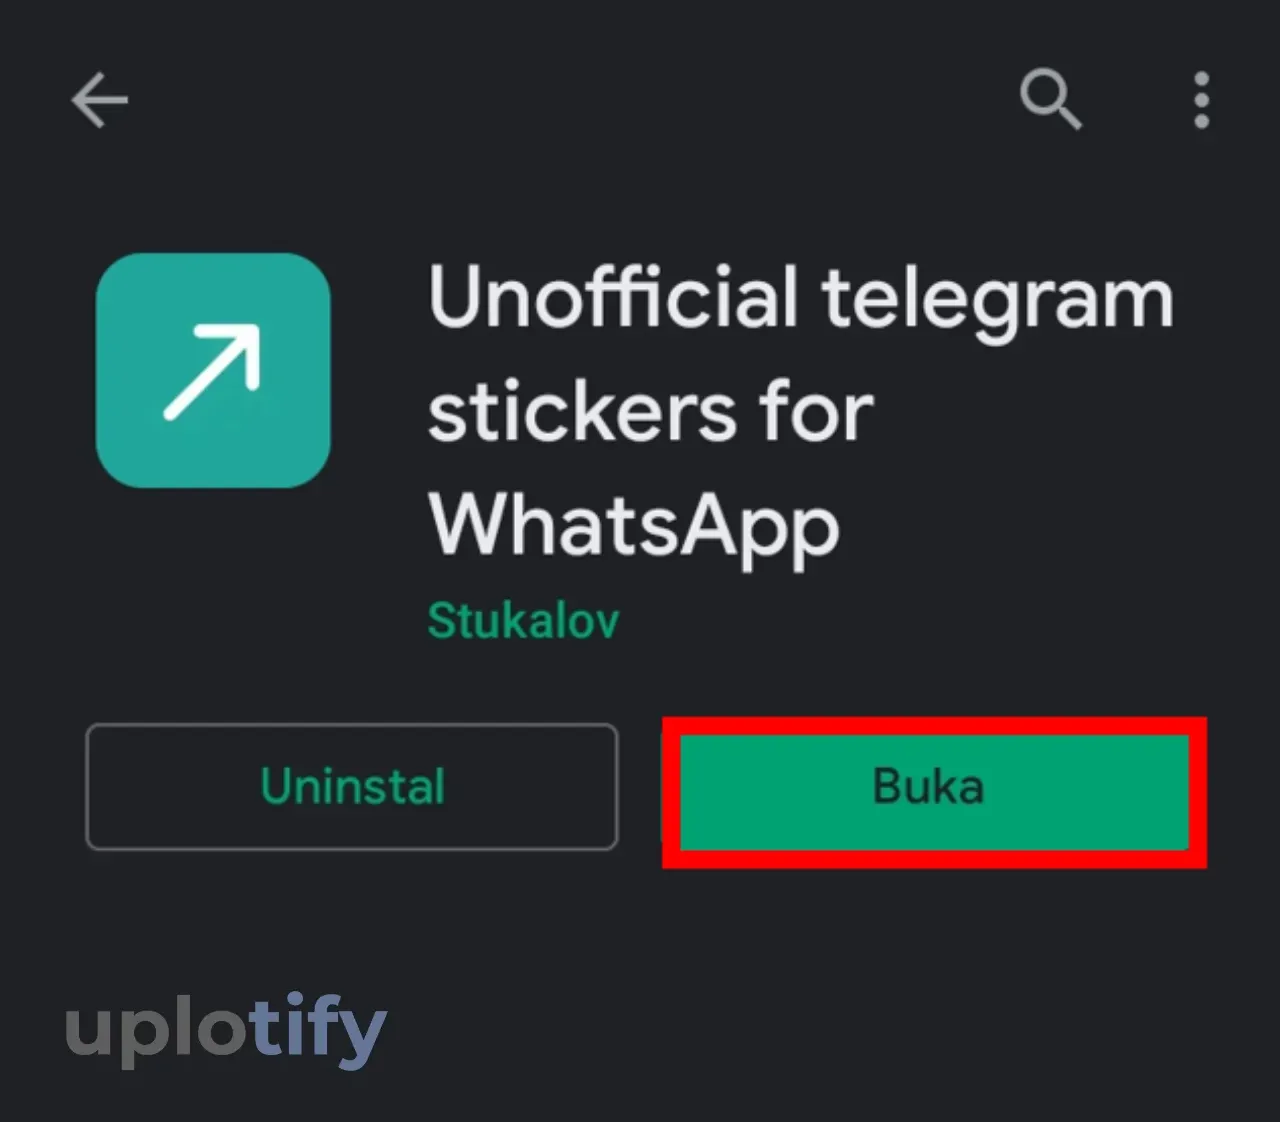 Pasang Aplikasi Unofficial Telegram Stikers